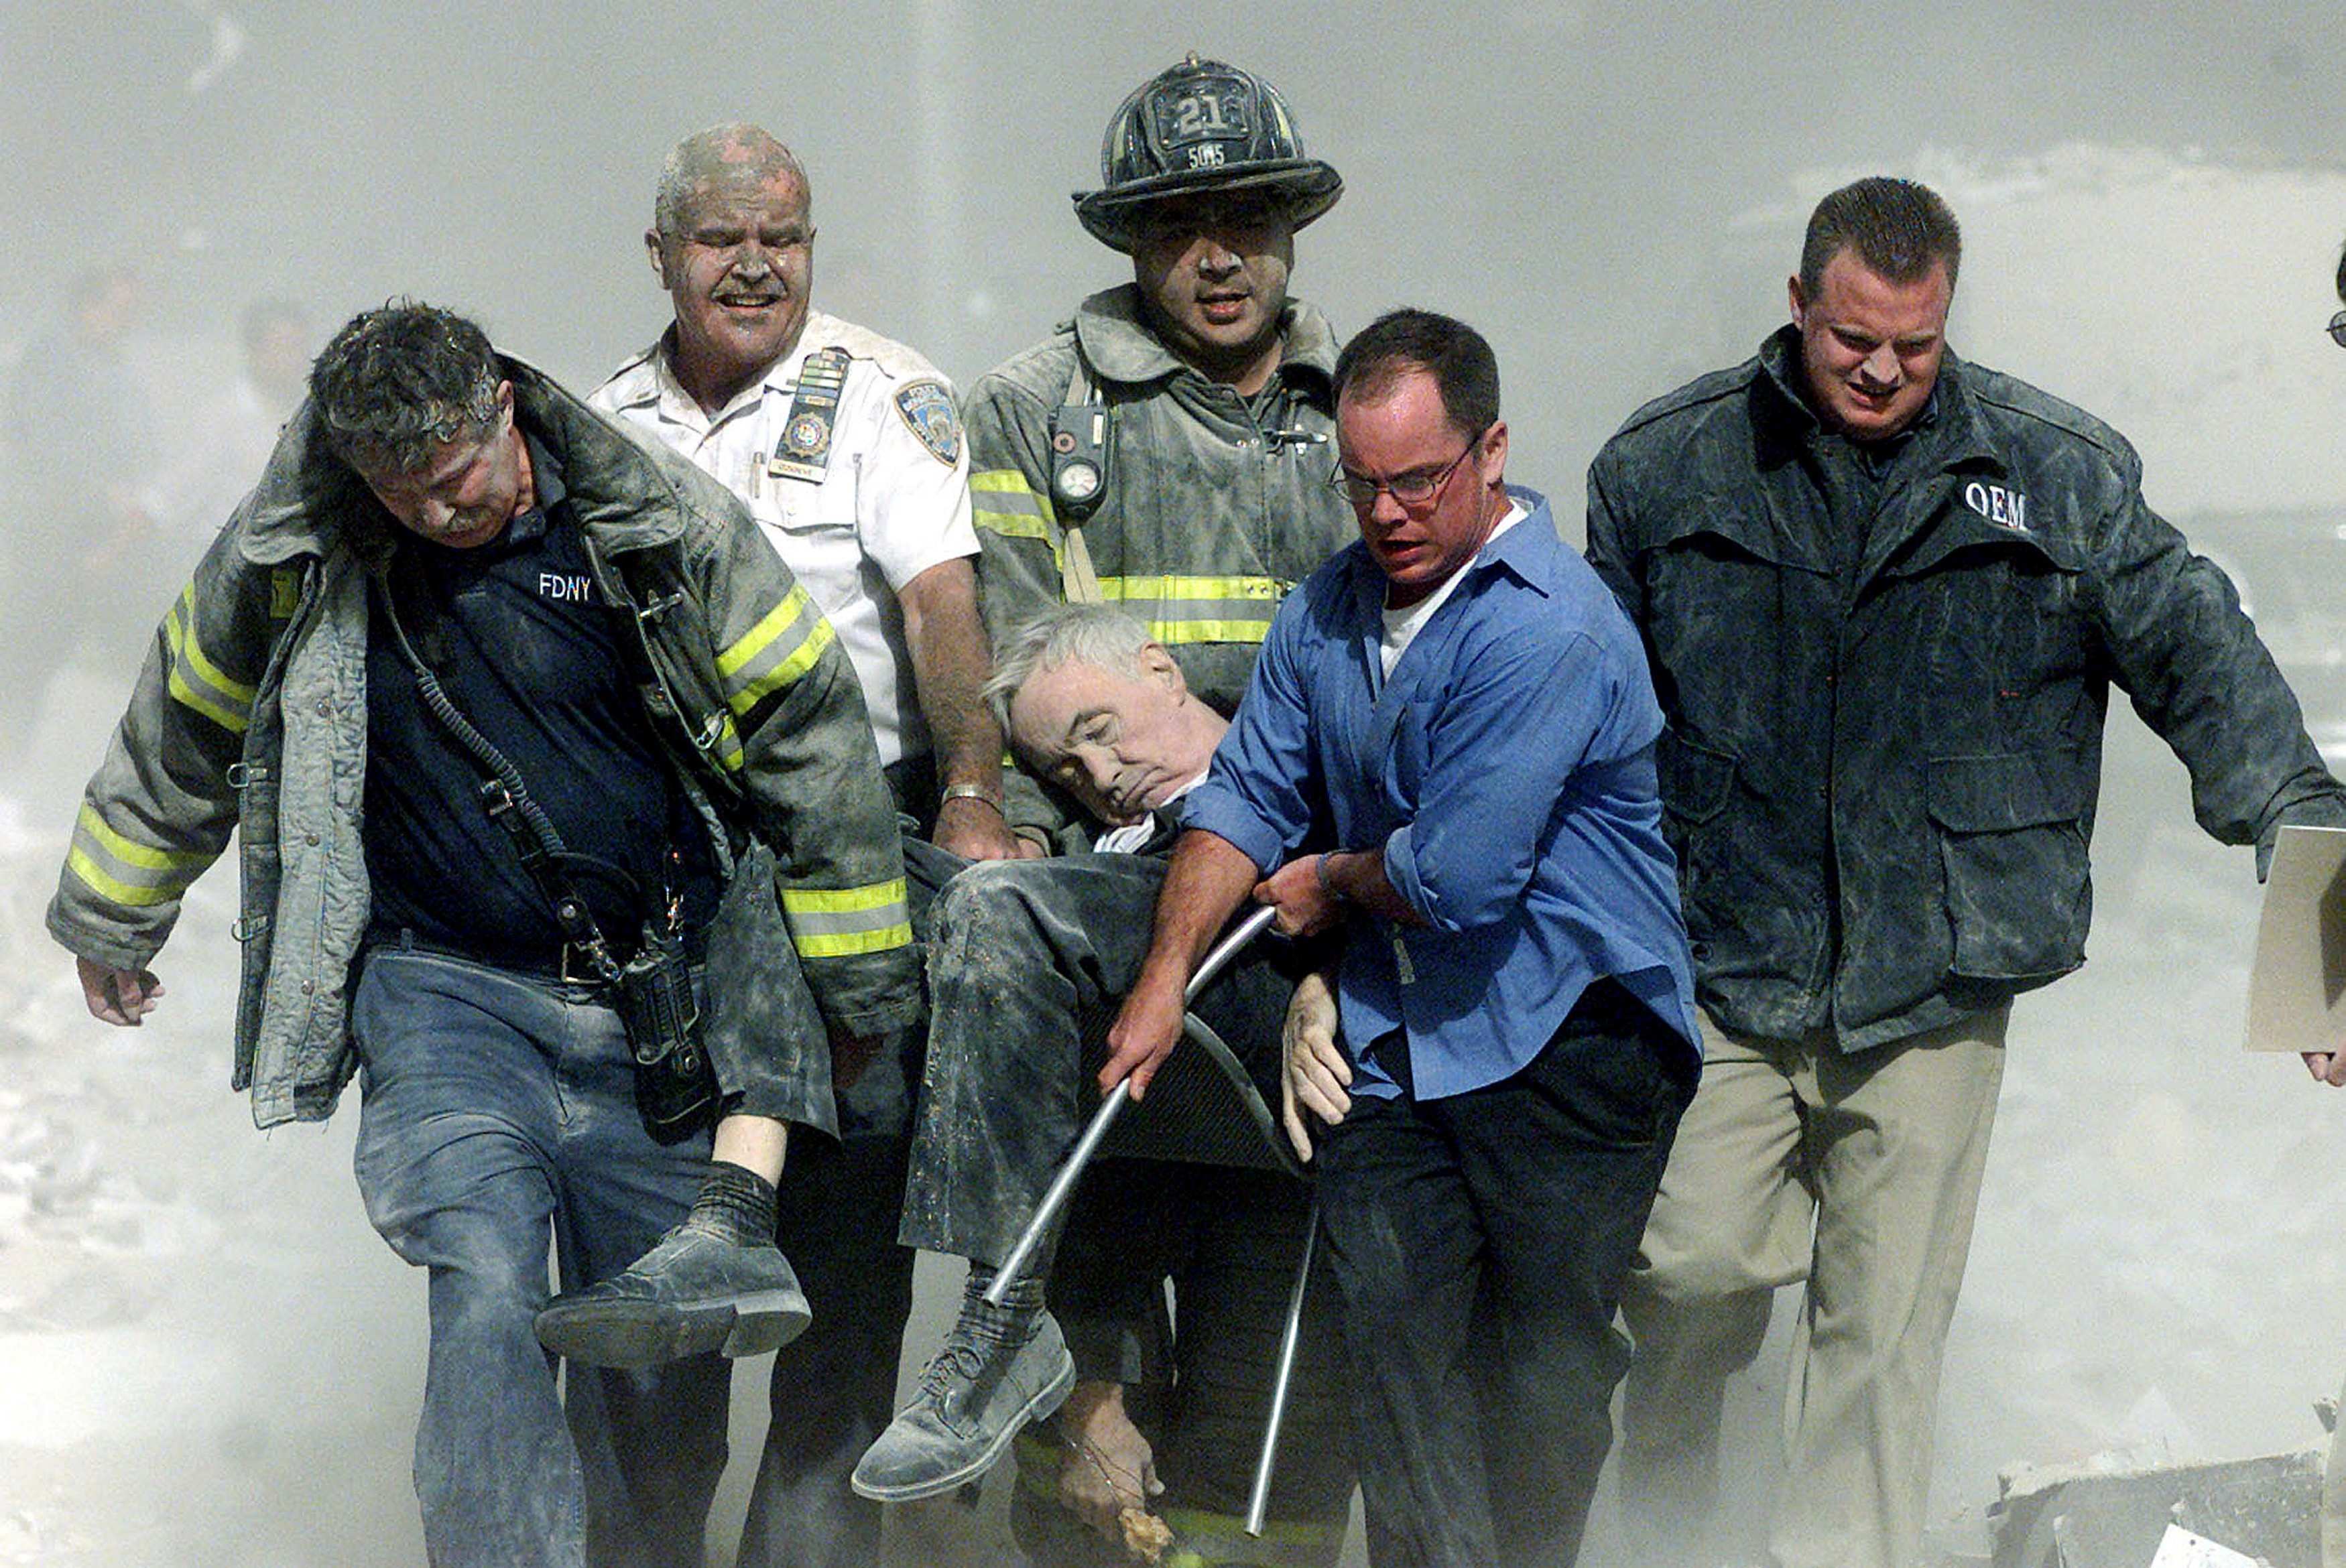 Сколько умерло людей во время теракта. Спасатели 11 сентября 2001. Теракт в Нью-Йорке 11 сентября 2001. Башни Близнецы 11 сентября жертвы. Число погибших 11 сентября 2001.